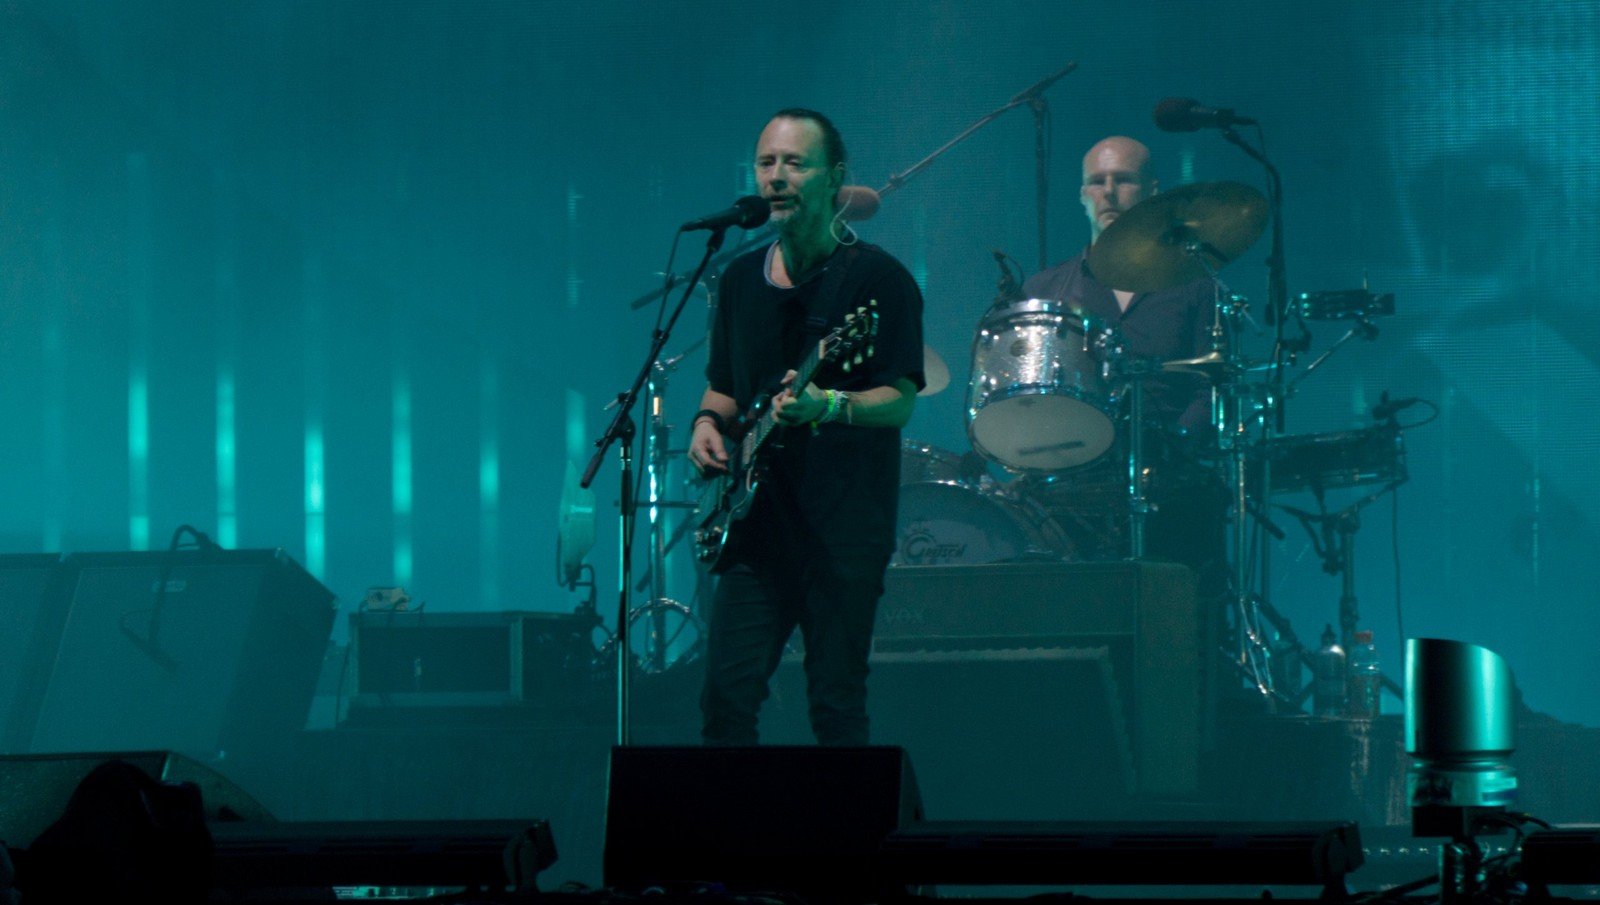 Zespół Radiohead po ataku hakerskim upublicznił 18 godzin nagrań